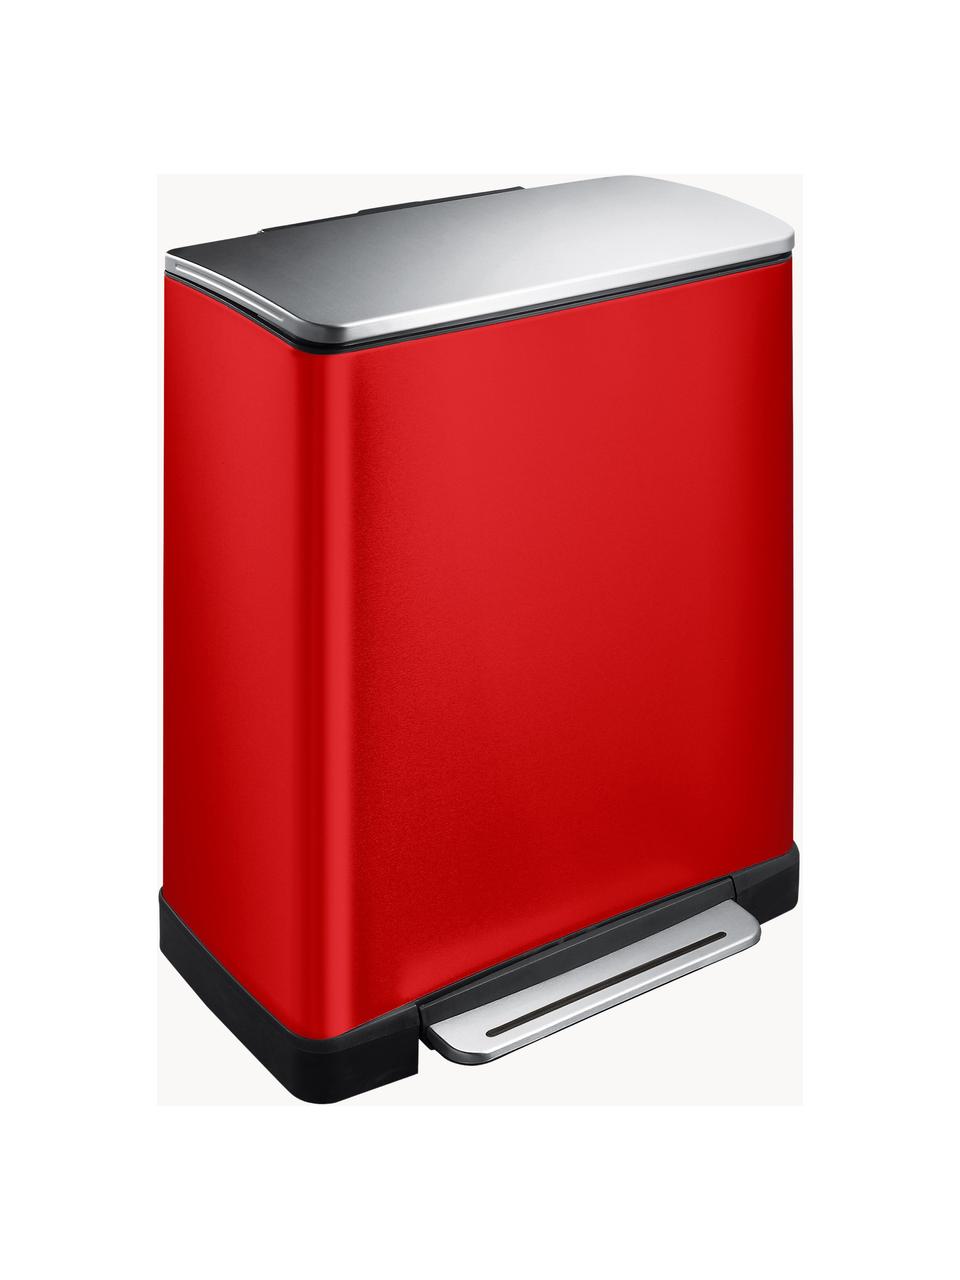 Odpadkový kôš Recycle E-Cube, 28 l + 18 l, Červená, Š 50 x V 65 cm, 28 l + 18 l